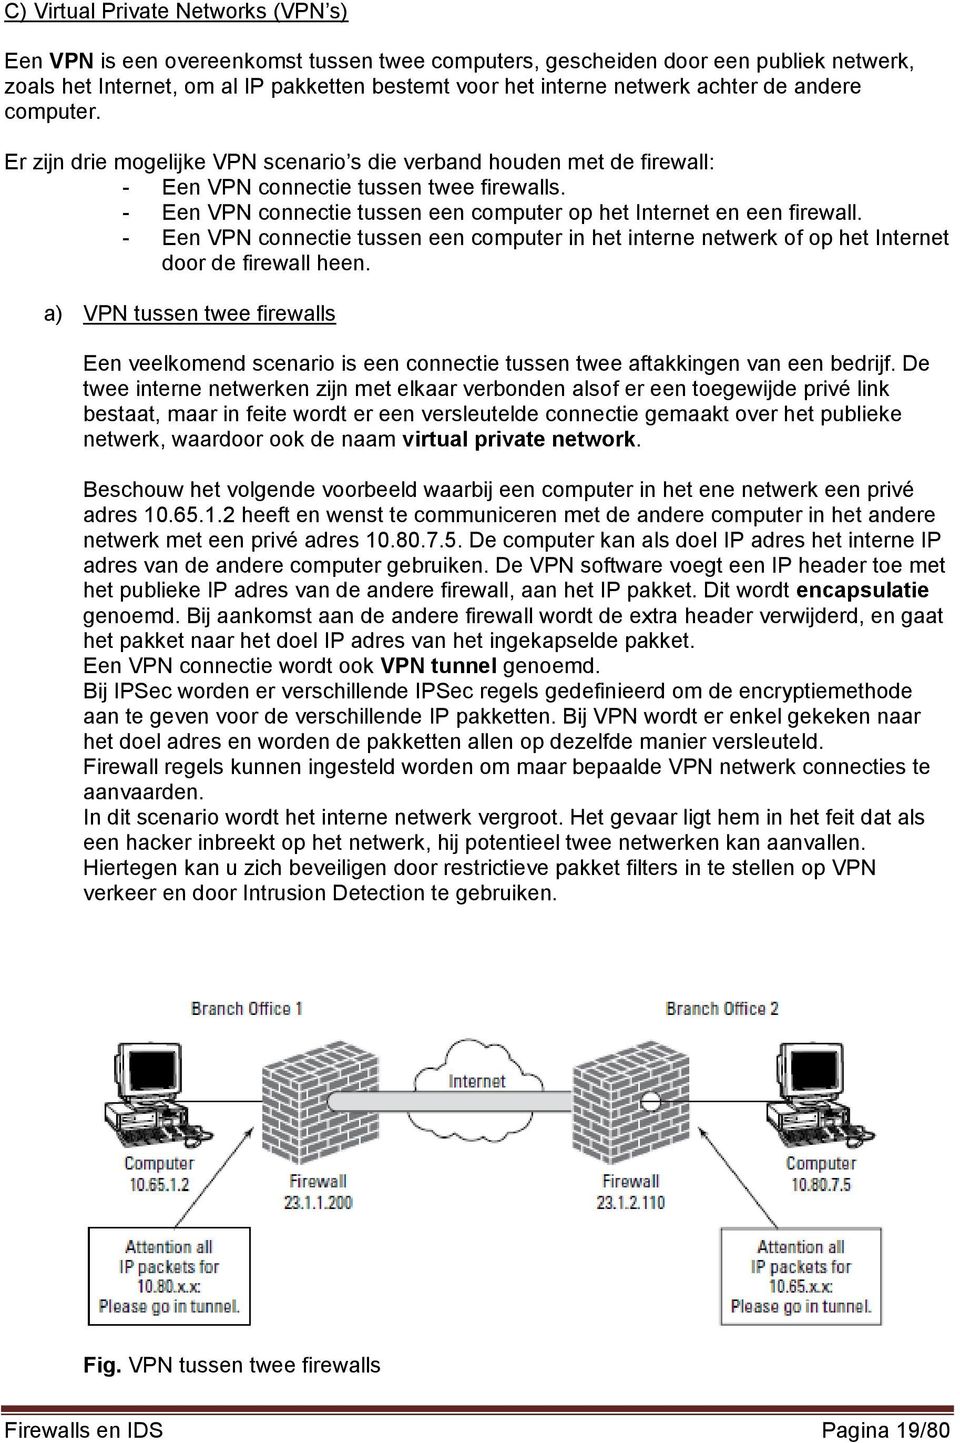 - Een VPN connectie tussen een computer op het Internet en een firewall. - Een VPN connectie tussen een computer in het interne netwerk of op het Internet door de firewall heen.